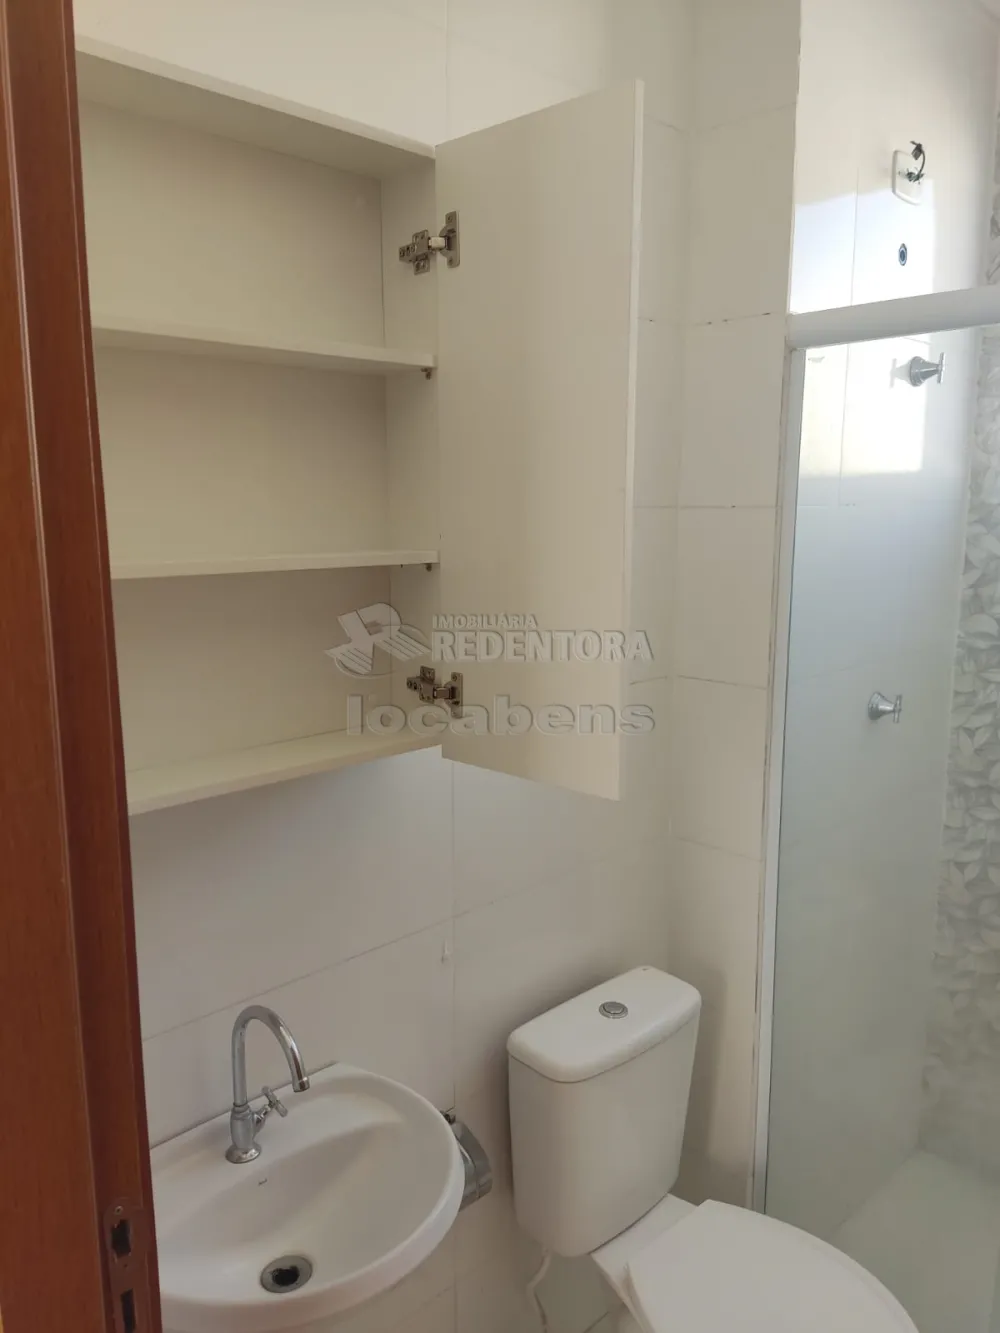 Alugar Apartamento / Padrão em São José do Rio Preto apenas R$ 850,00 - Foto 9